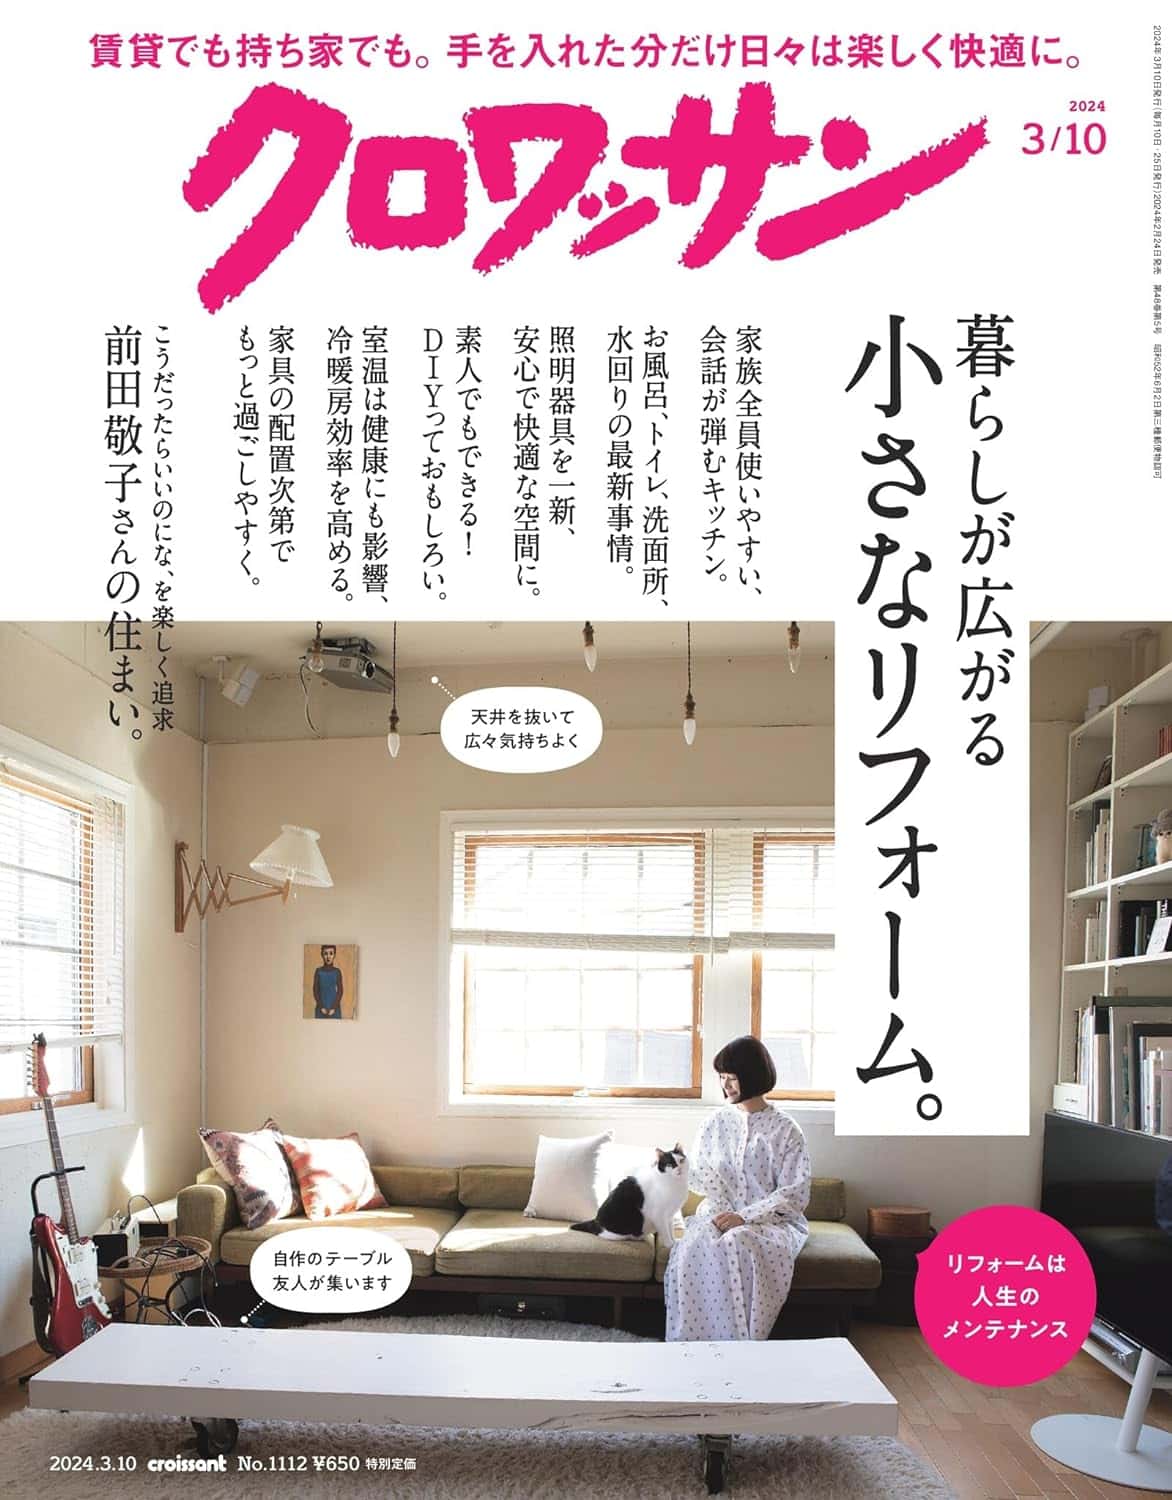 2月24日発売の『クロワッサン』最新号は「暮らしが広がる小さなリフォーム。」